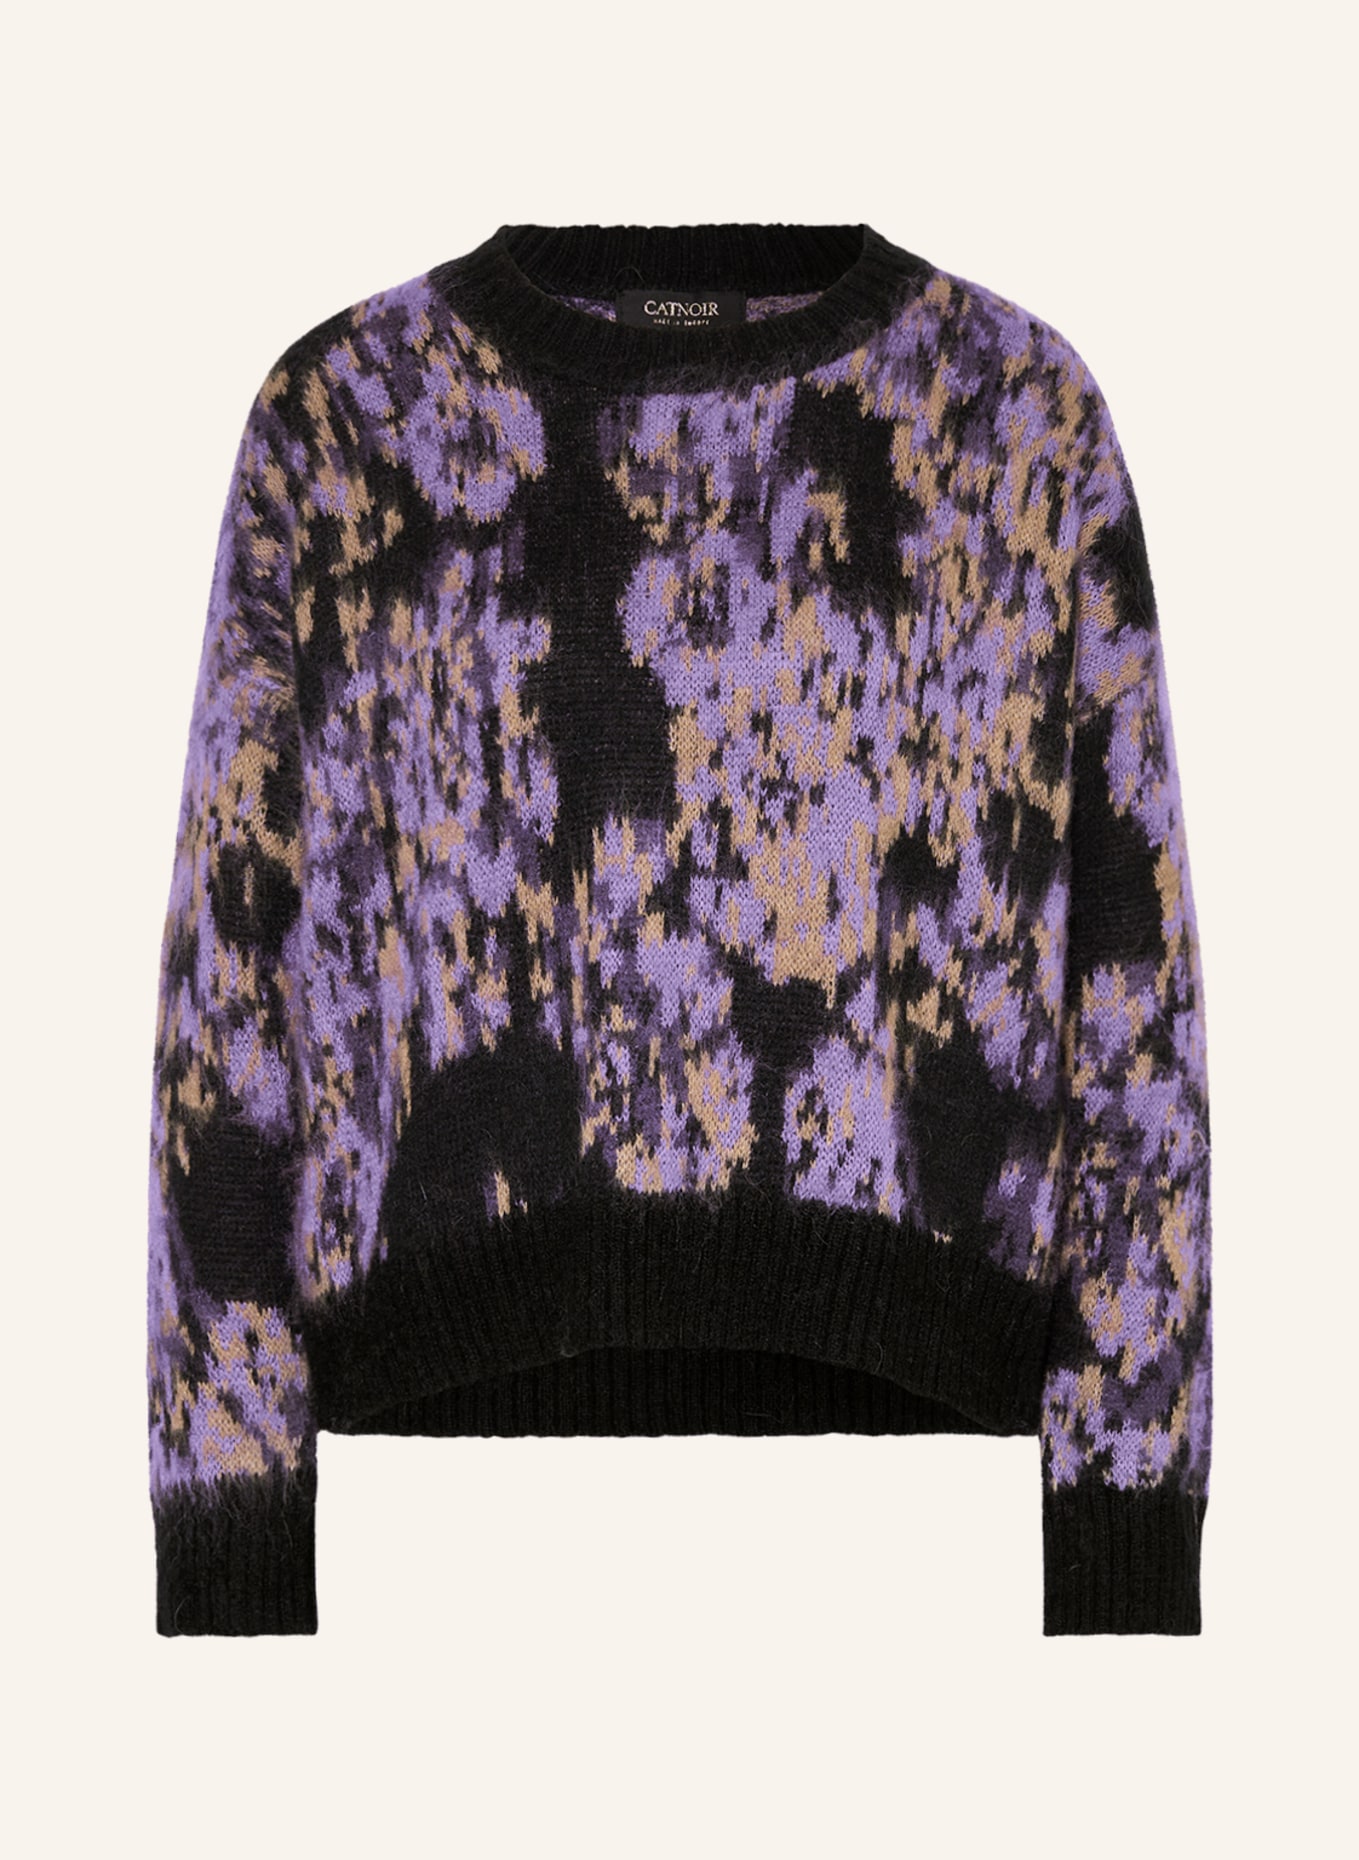 CATNOIR Sweater, Color: LIGHT PURPLE/ BLACK/ BEIGE (Image 1)